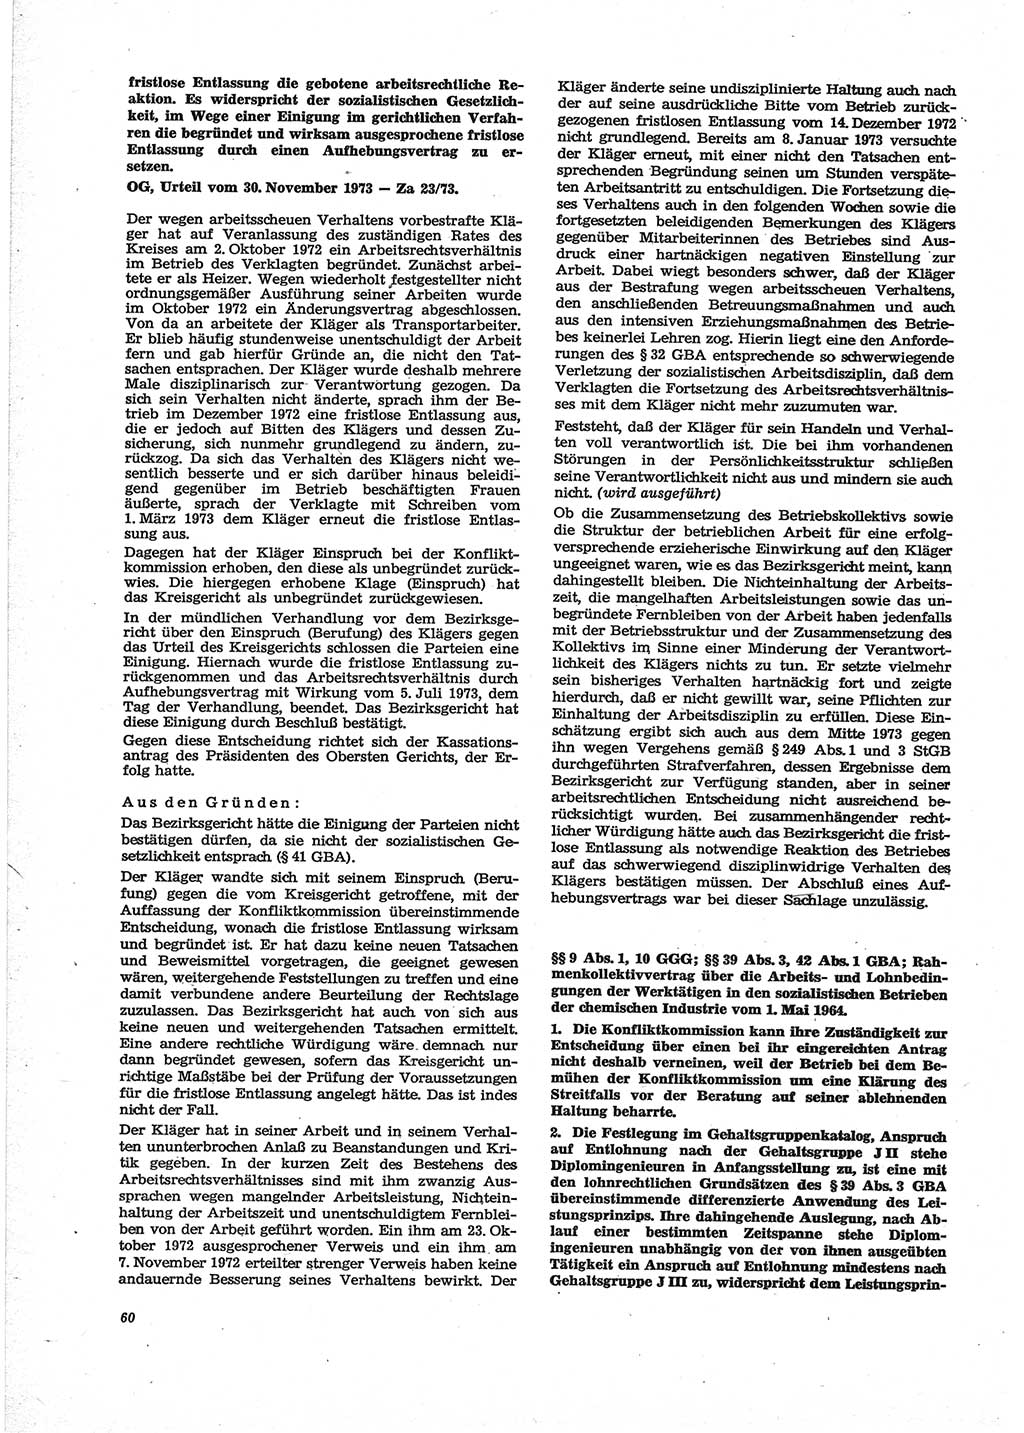 Neue Justiz (NJ), Zeitschrift für Recht und Rechtswissenschaft [Deutsche Demokratische Republik (DDR)], 28. Jahrgang 1974, Seite 60 (NJ DDR 1974, S. 60)